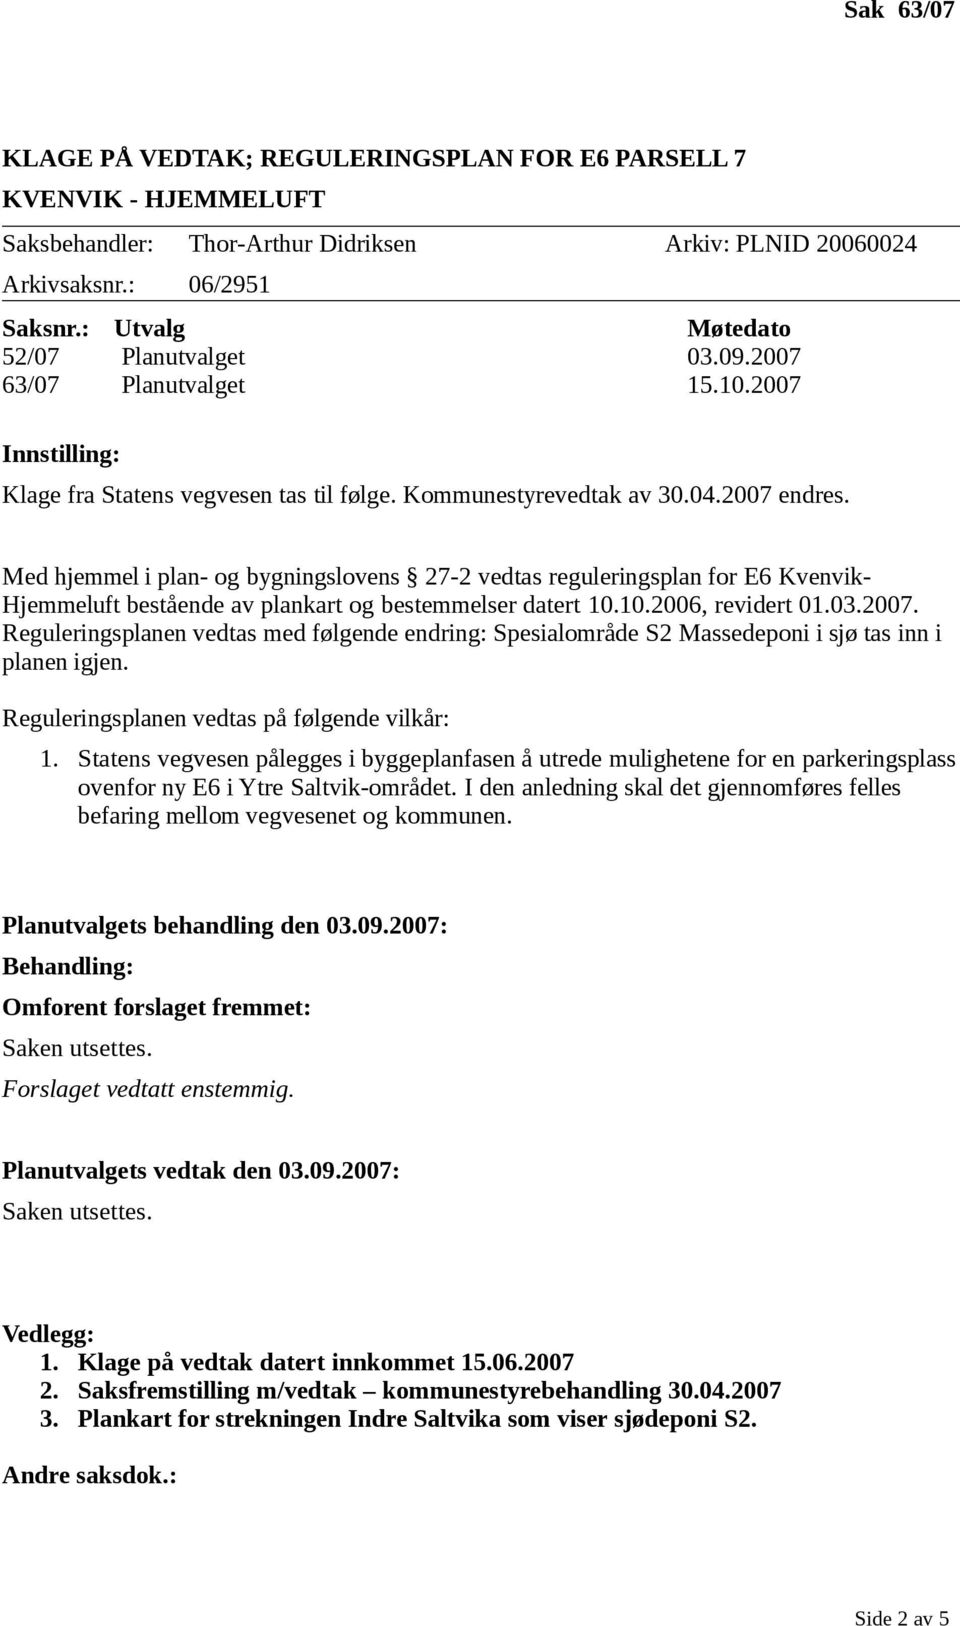 Med hjemmel i plan- og bygningslovens 27-2 vedtas reguleringsplan for E6 Kvenvik- Hjemmeluft bestående av plankart og bestemmelser datert 10.10.2006, revidert 01.03.2007.